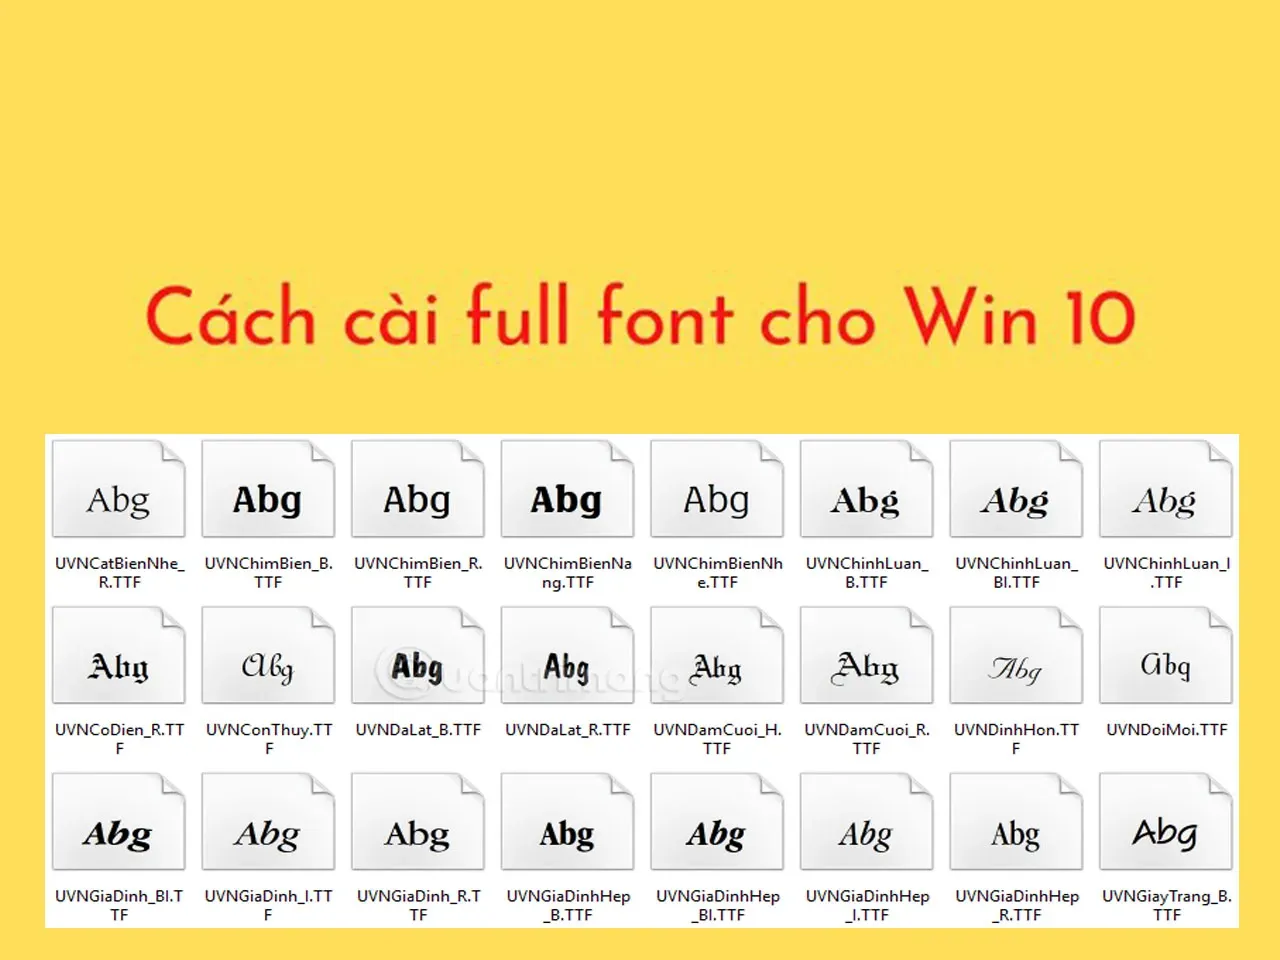 Trọn bộ Full Font Windows 10 và hướng dẫn cách cài đặt 